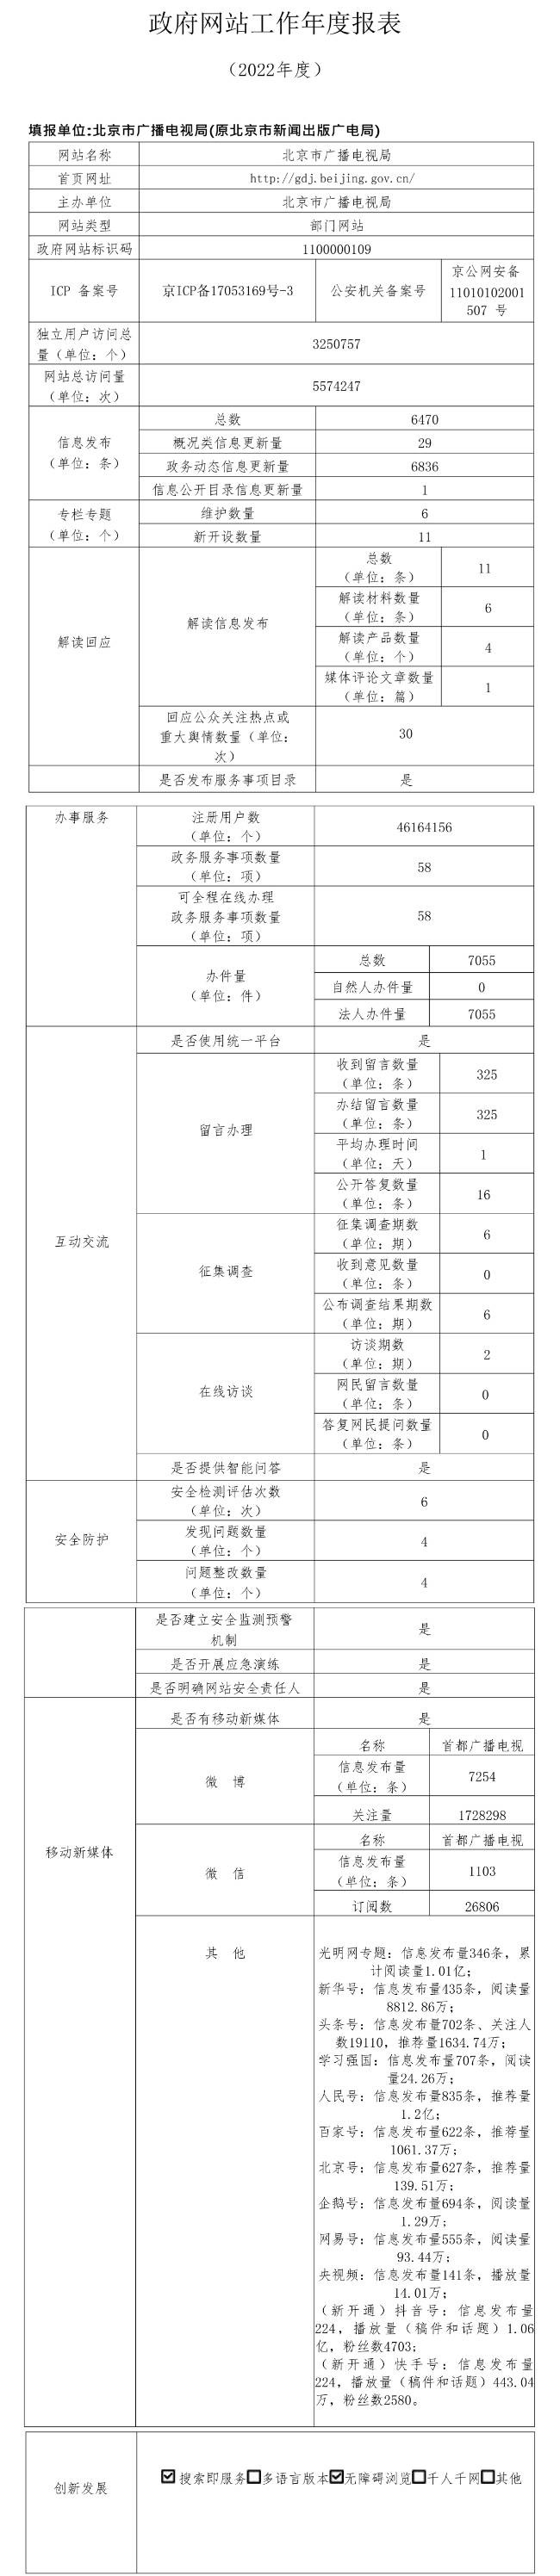 北京市廣播電視局2022年政府網站年度工作報表